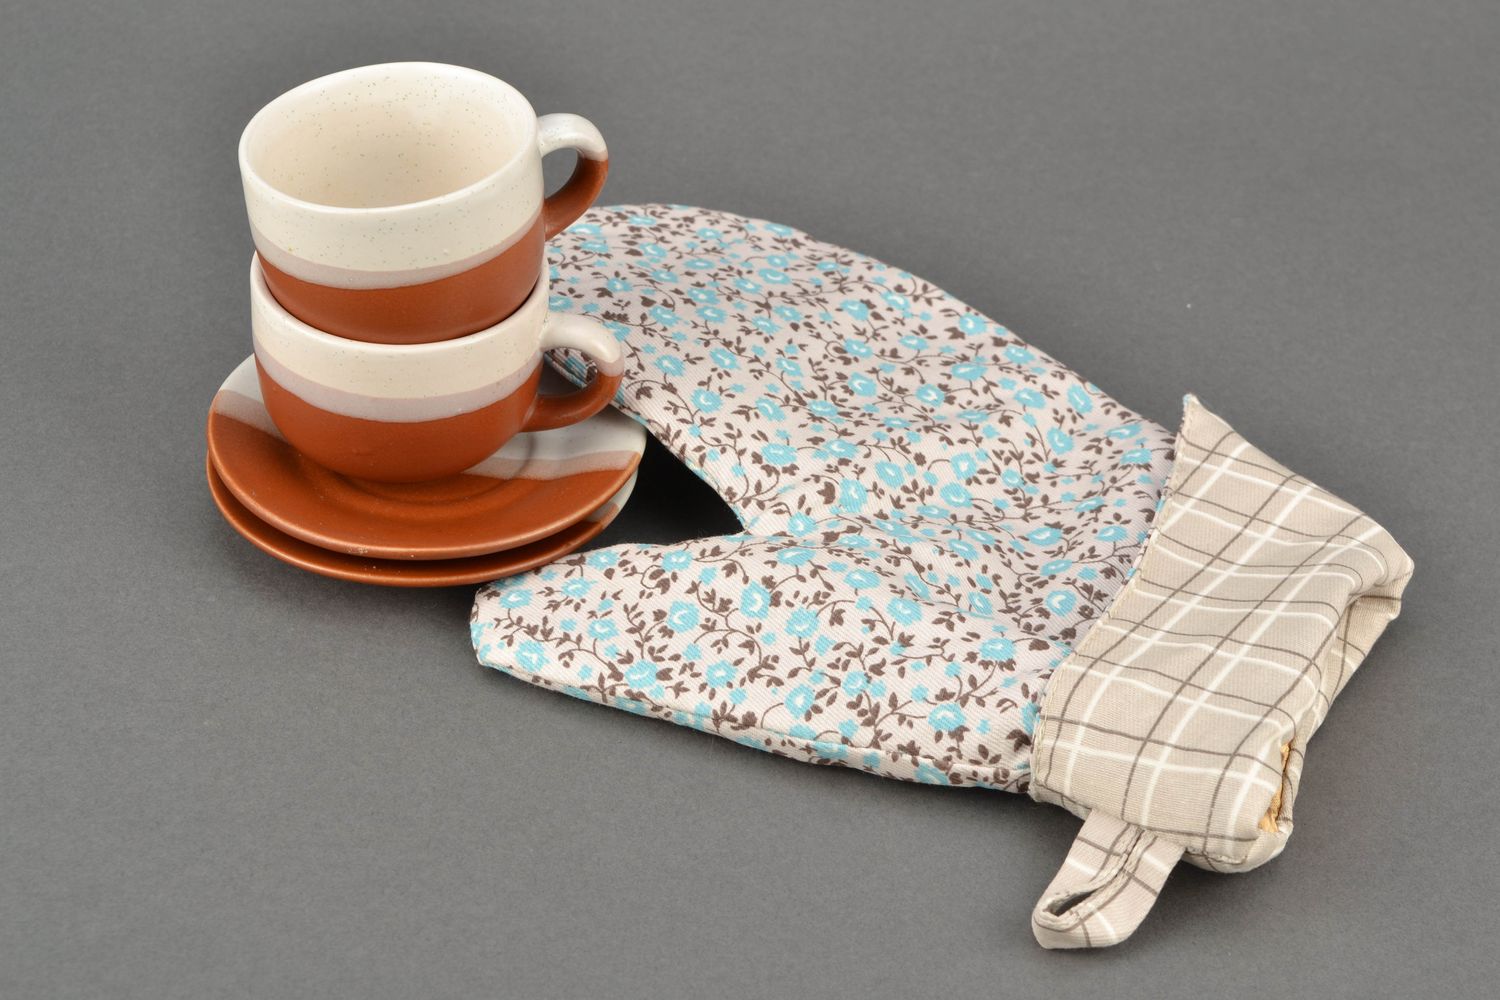 Текстильная рукавичка-прихватка для горячего с цветочным принтом фото 1